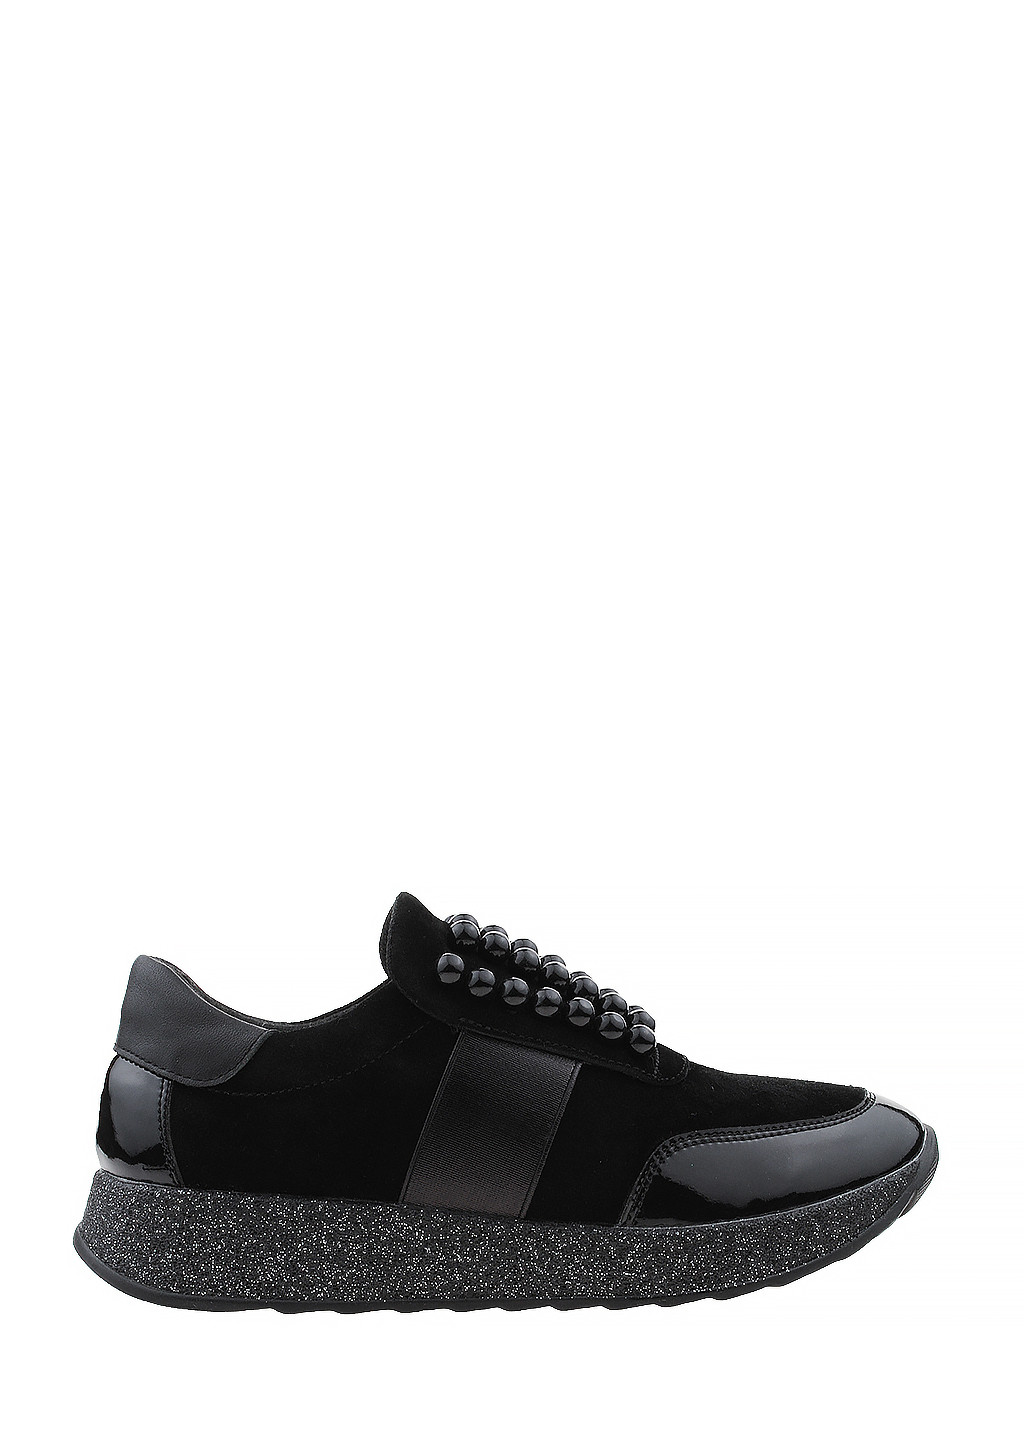 Чорні осінні кросівки r029-17 чорний Arcoboletto